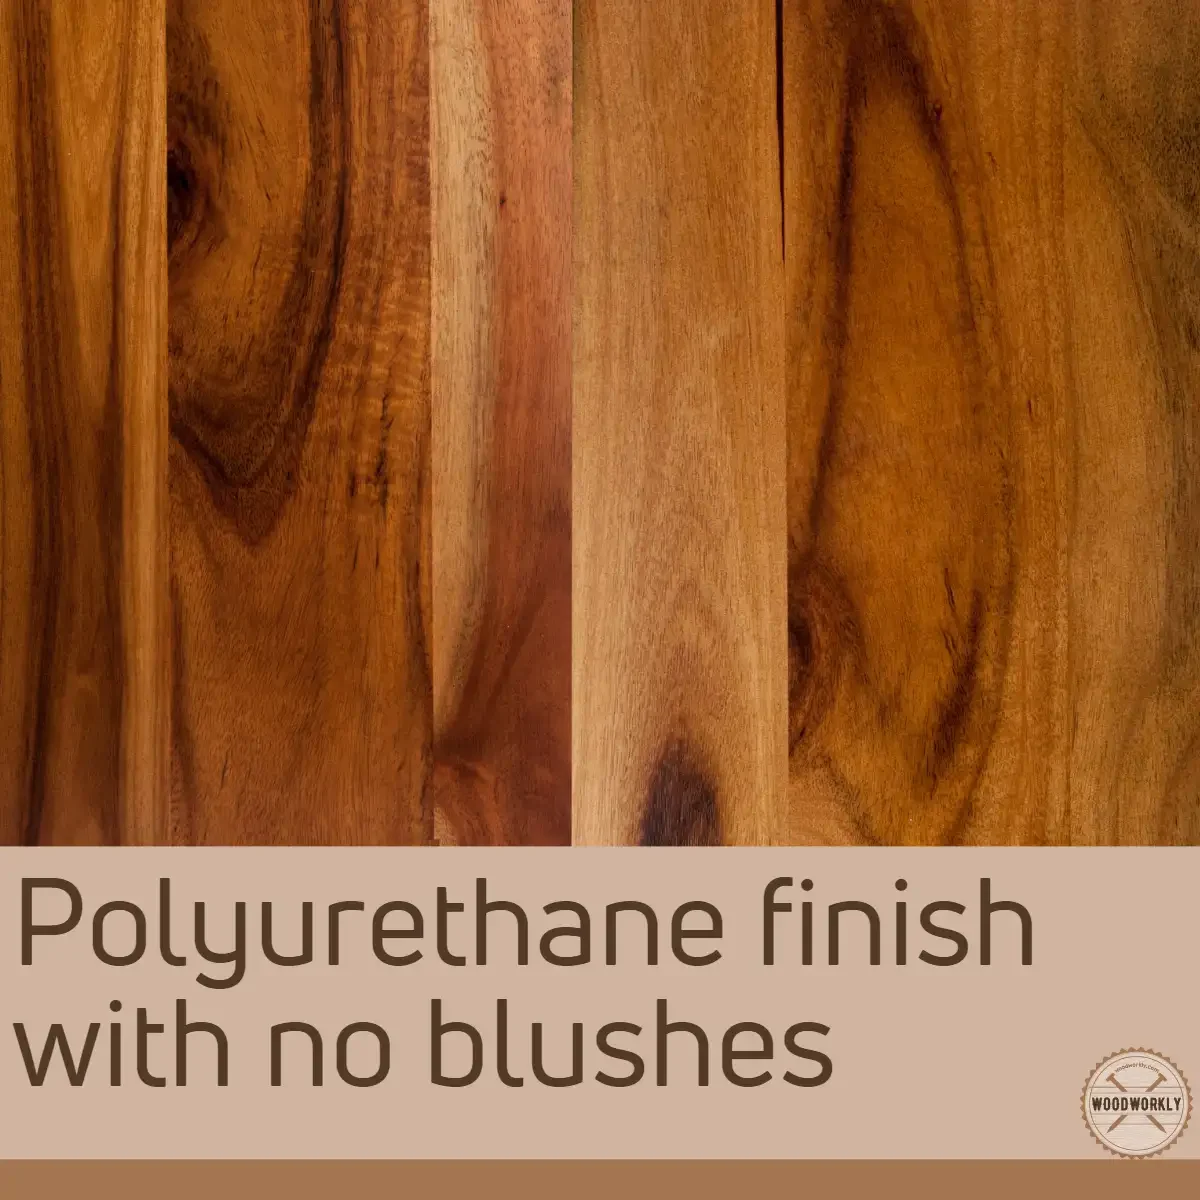 Polyurethane finish with no blushes